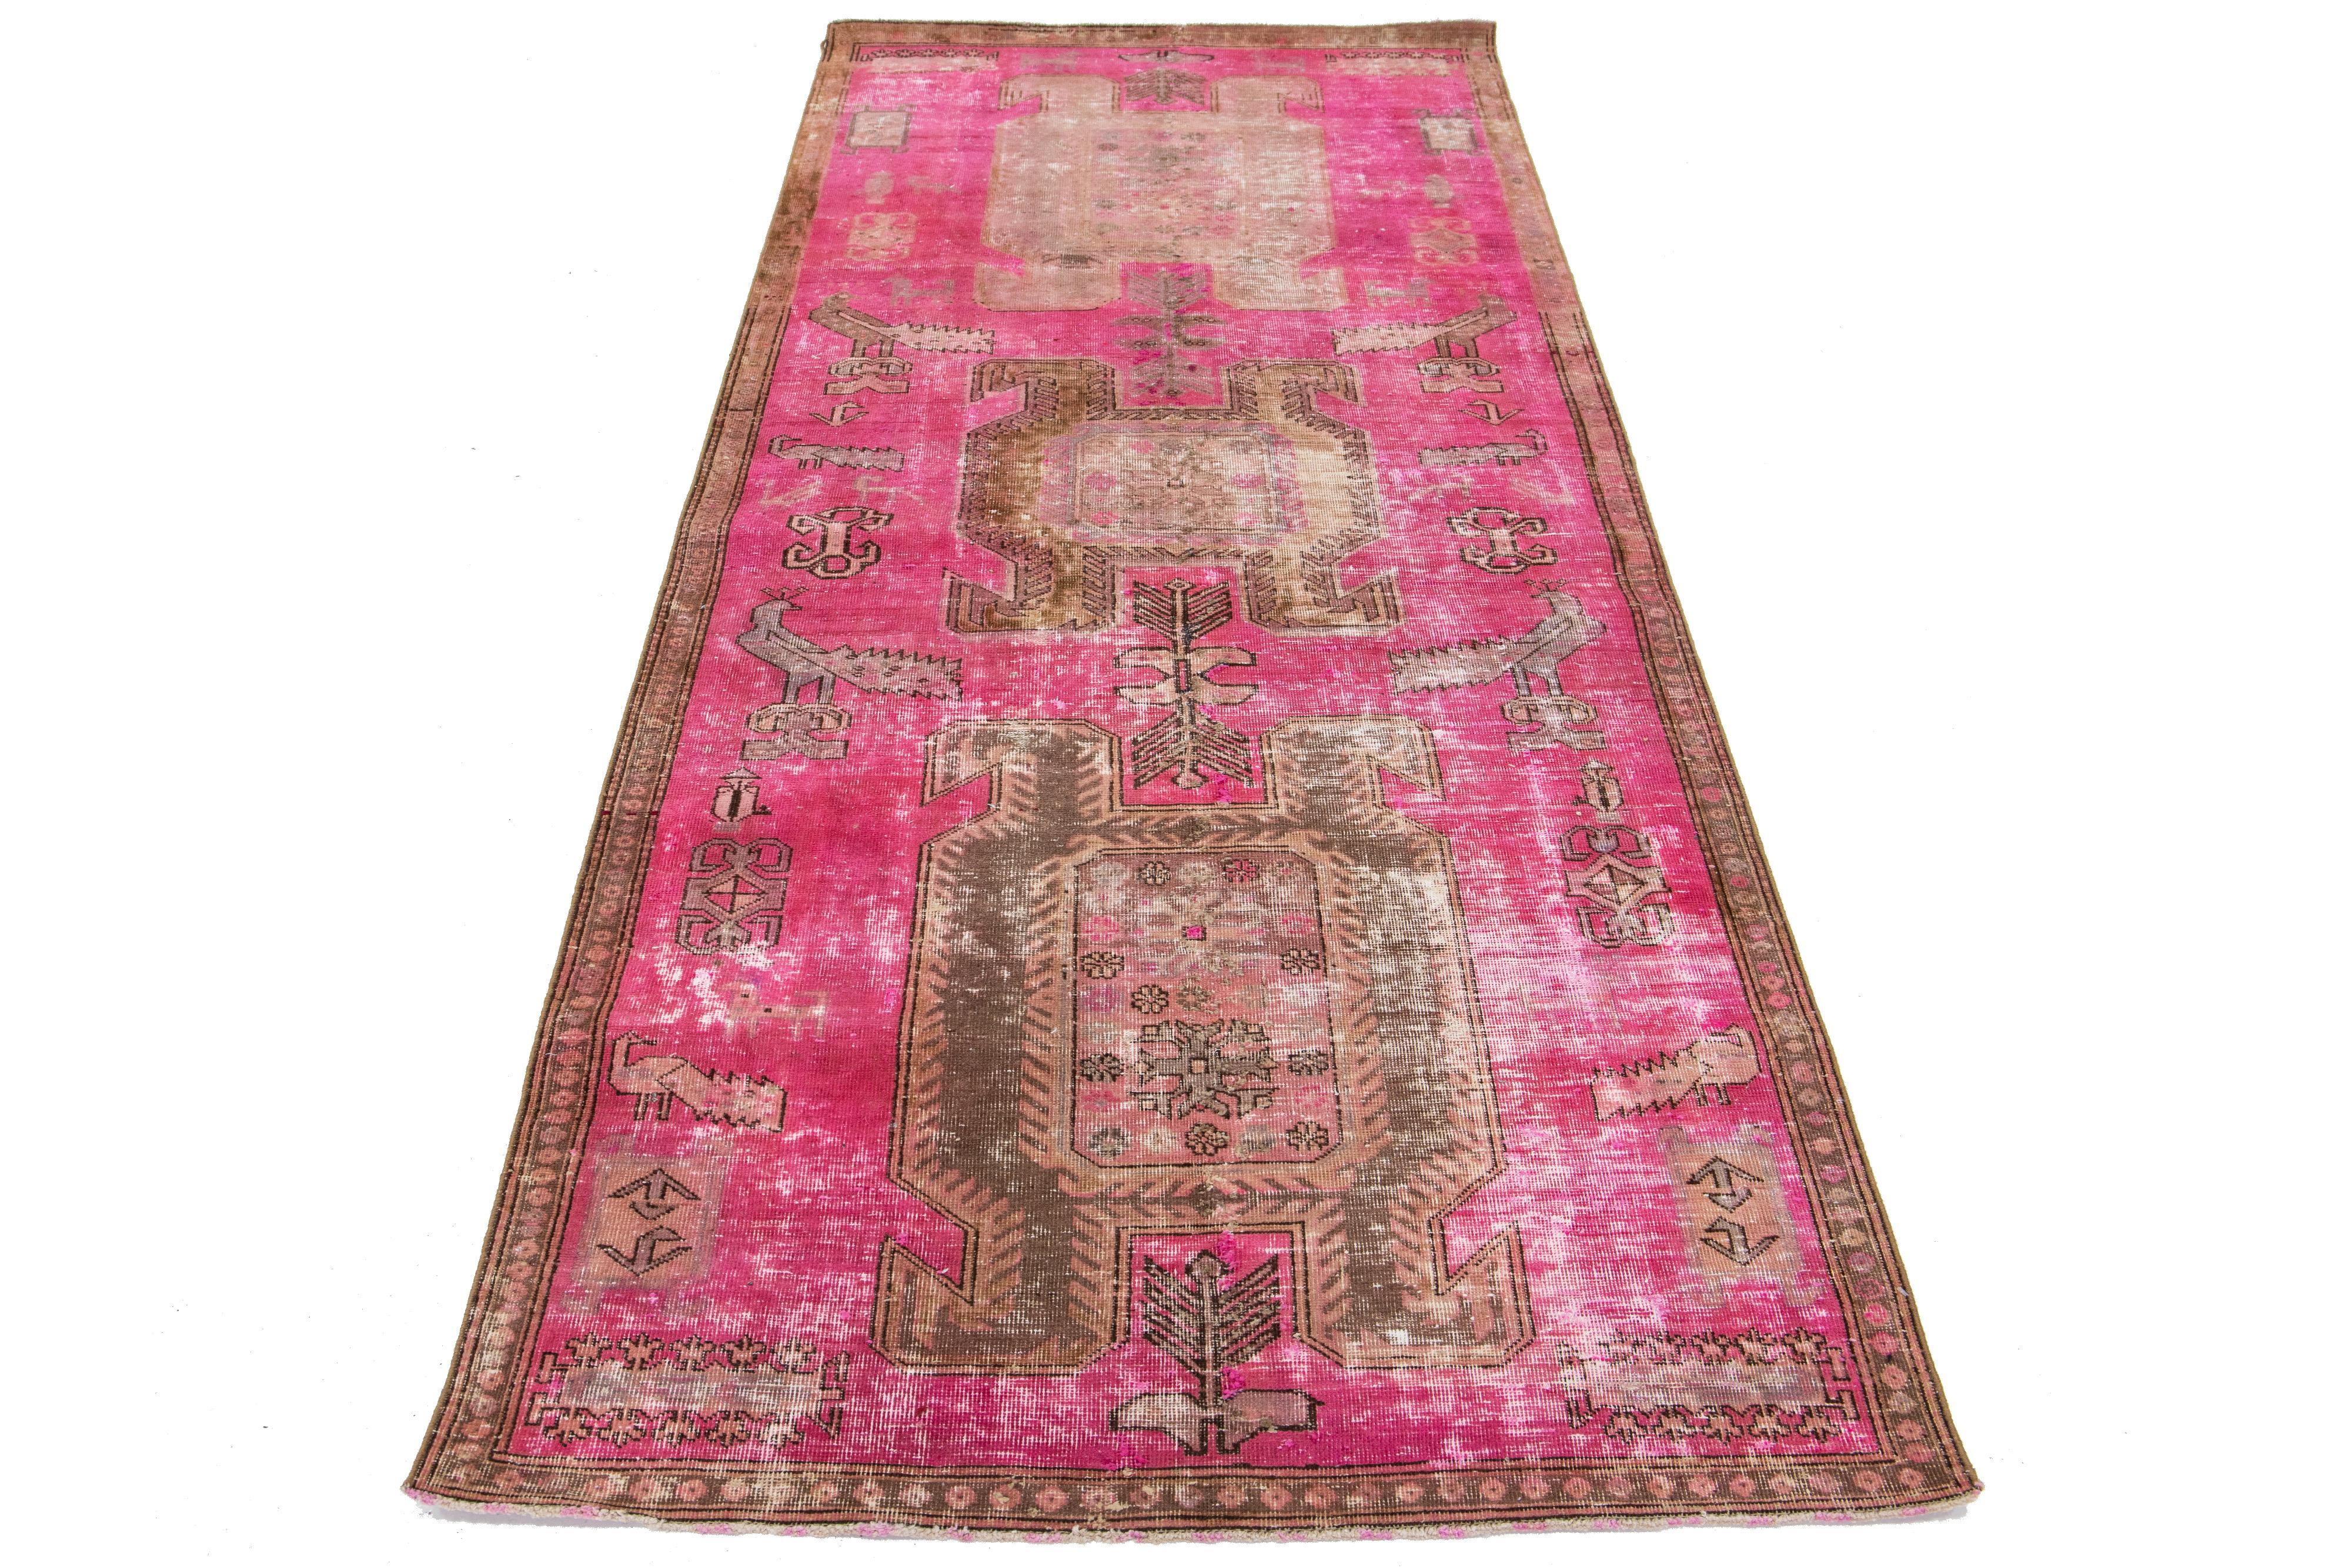 Dieser Vintage-Teppich aus persischer Wolle zeigt ein rosa Feld mit grauen Stammesakzenten.

Dieser Teppich misst 3' 9